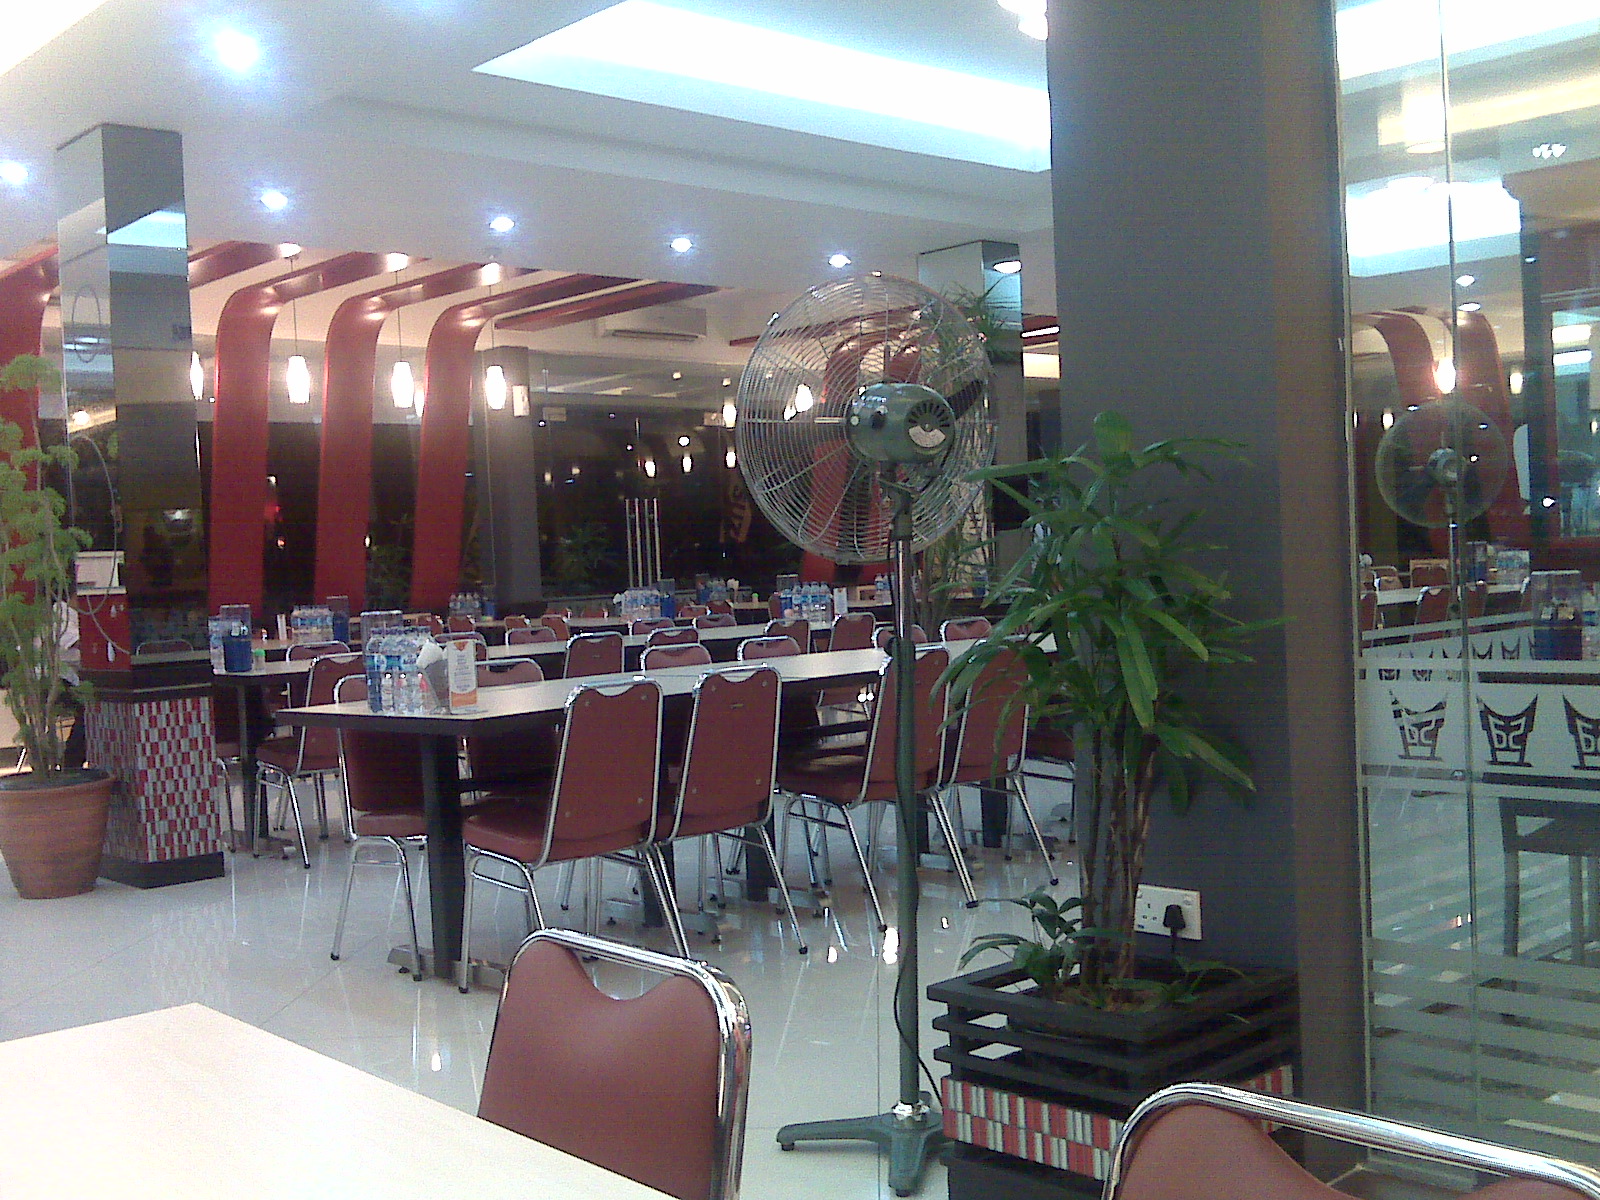 Ruko Mall GF 14-17 Kepri Mall Batam.